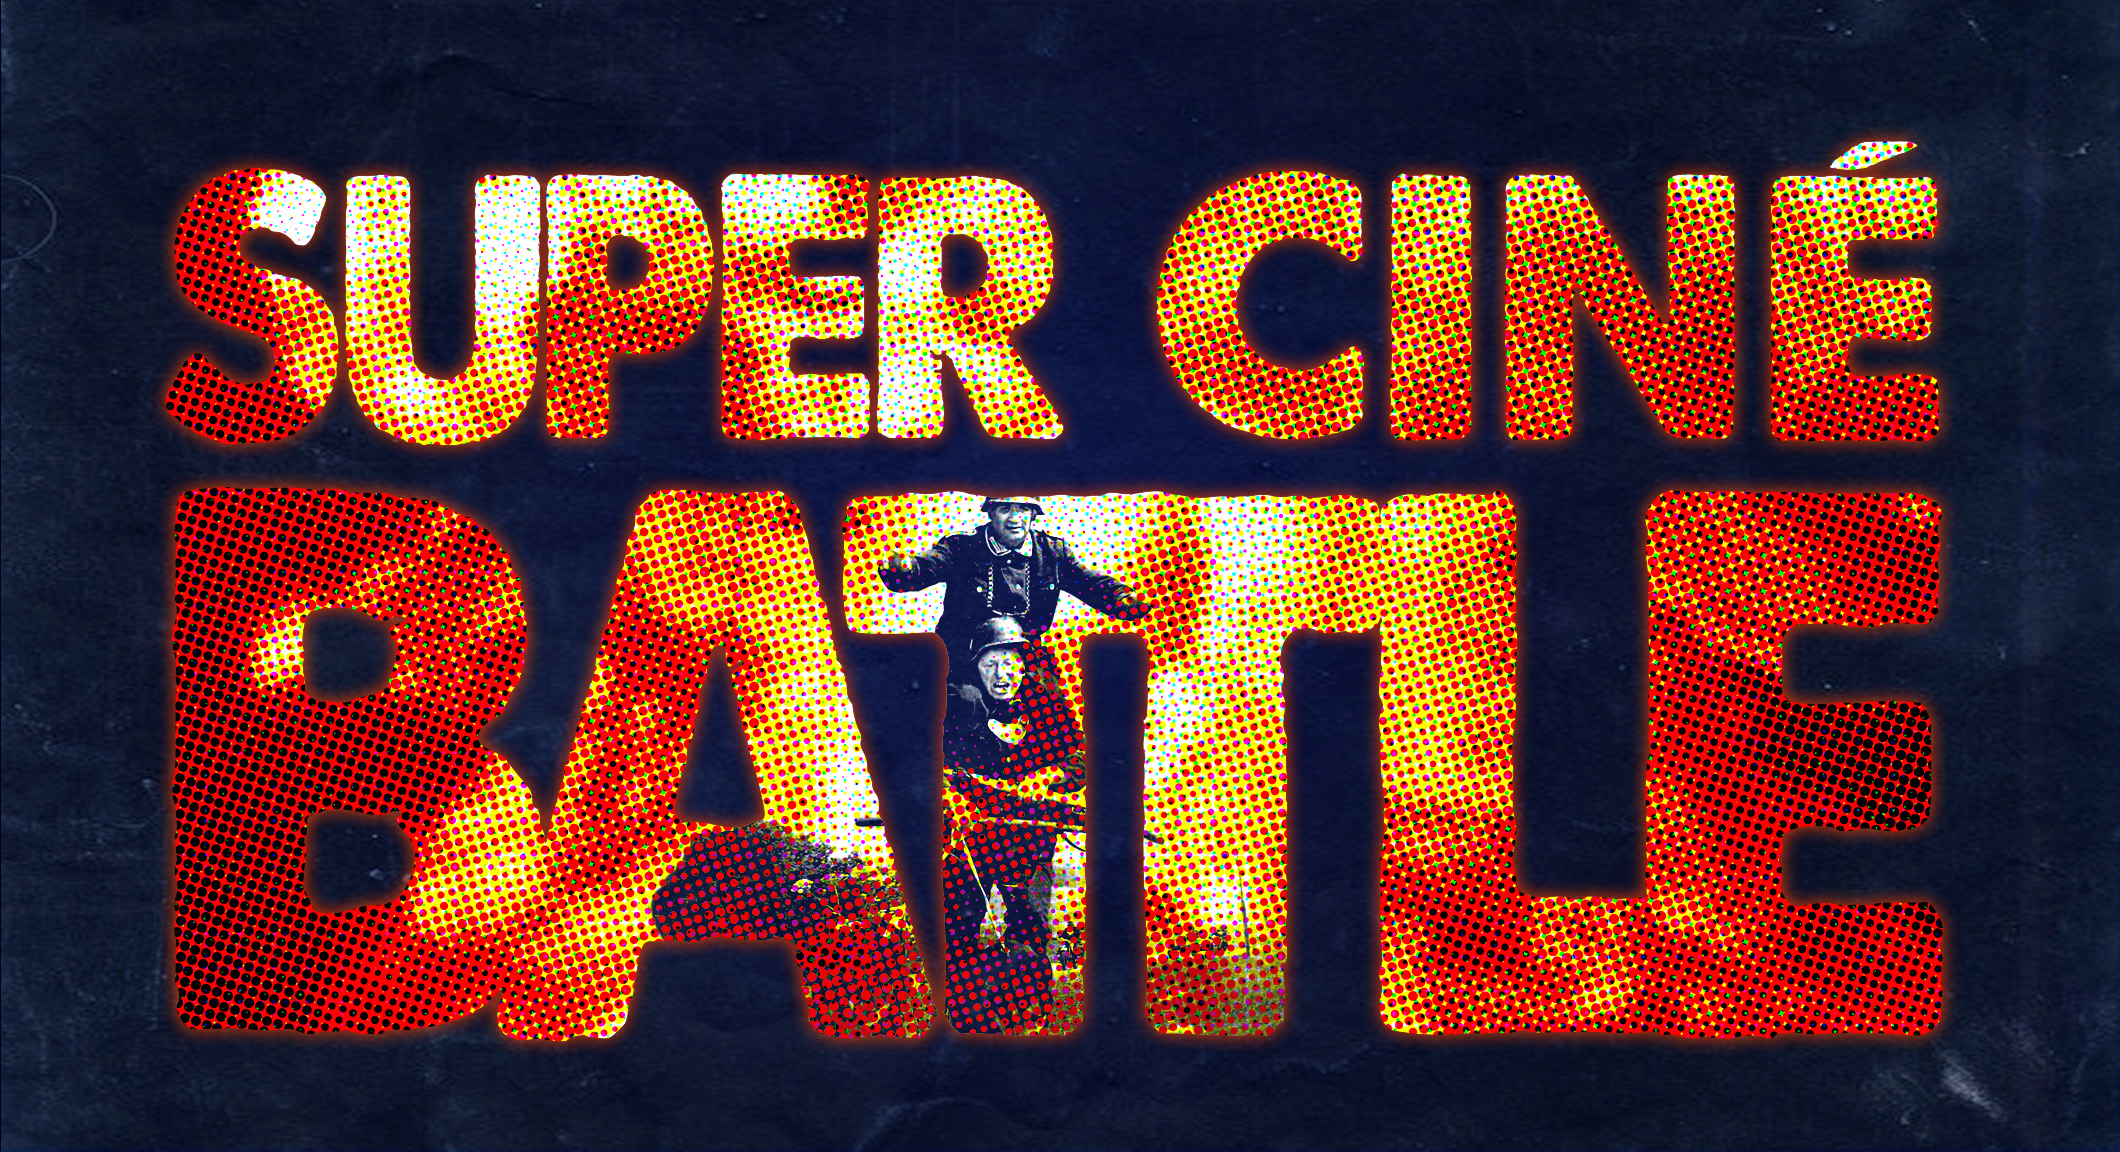 Super Ciné Battle 198 : Midsommar d’Alain Delon